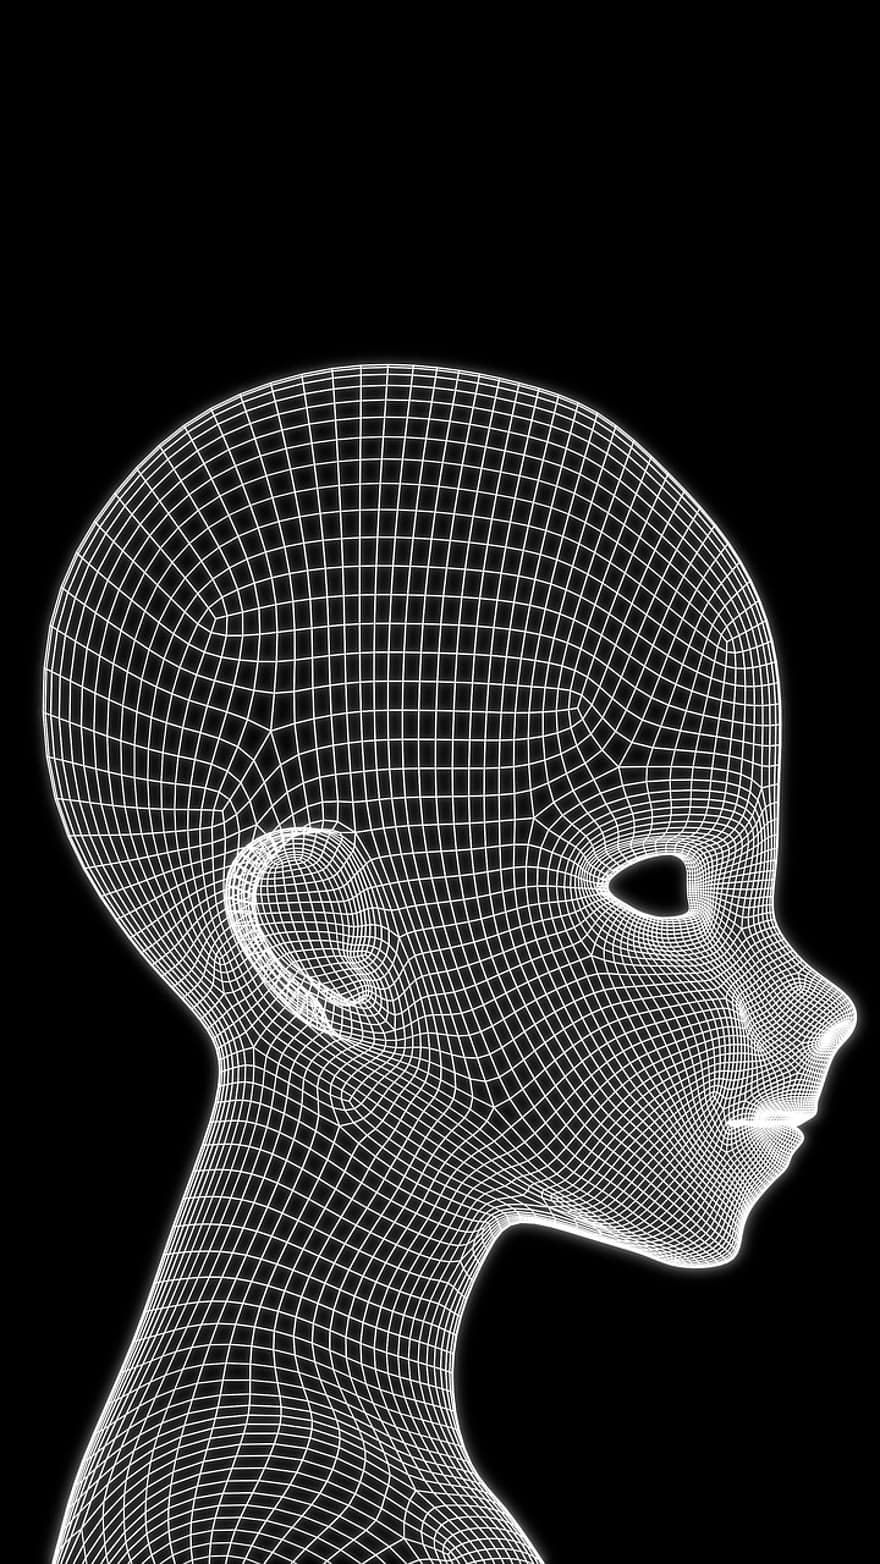 หัว, เป็นมนุษย์, ใบหน้า, 3d, ทางเรขาคณิต, แบบ, กรอบตาข่าย, กราฟิก, โครงสร้าง, การกระทำ, วัตถุ